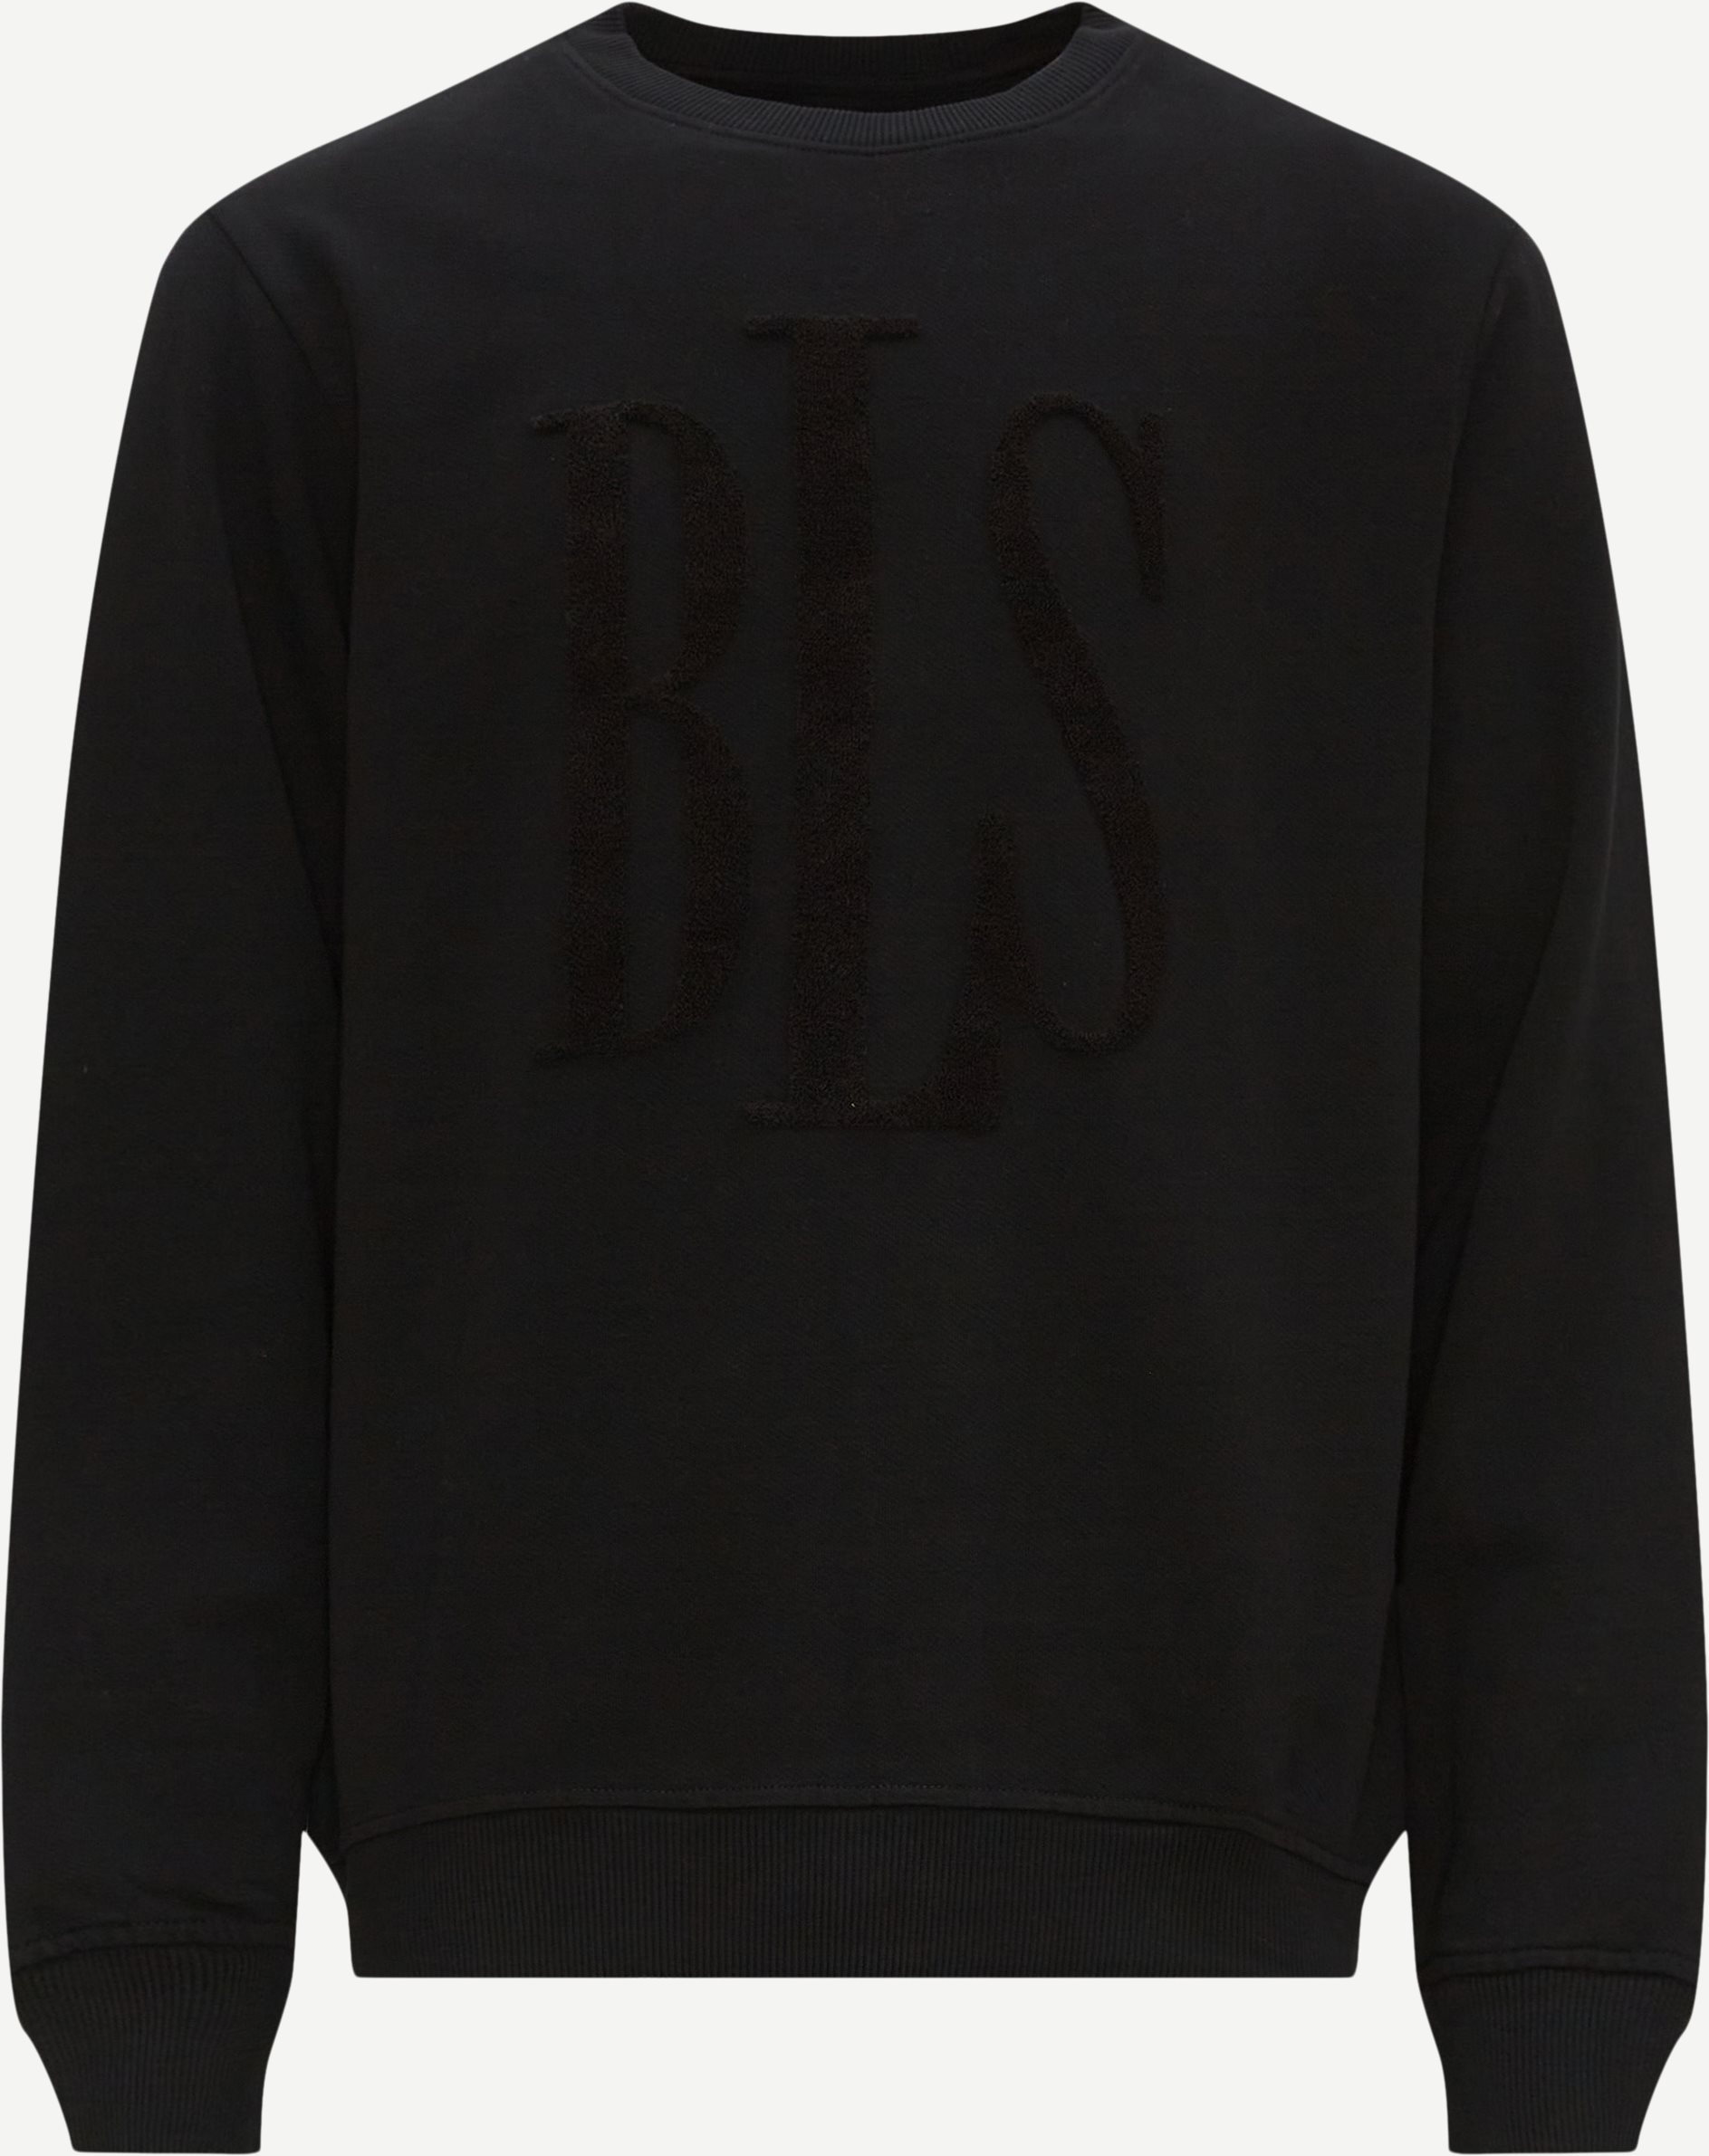 BLS Sweatshirts CLASSIC TONAL LOGO CREWNECK 202308047 Black